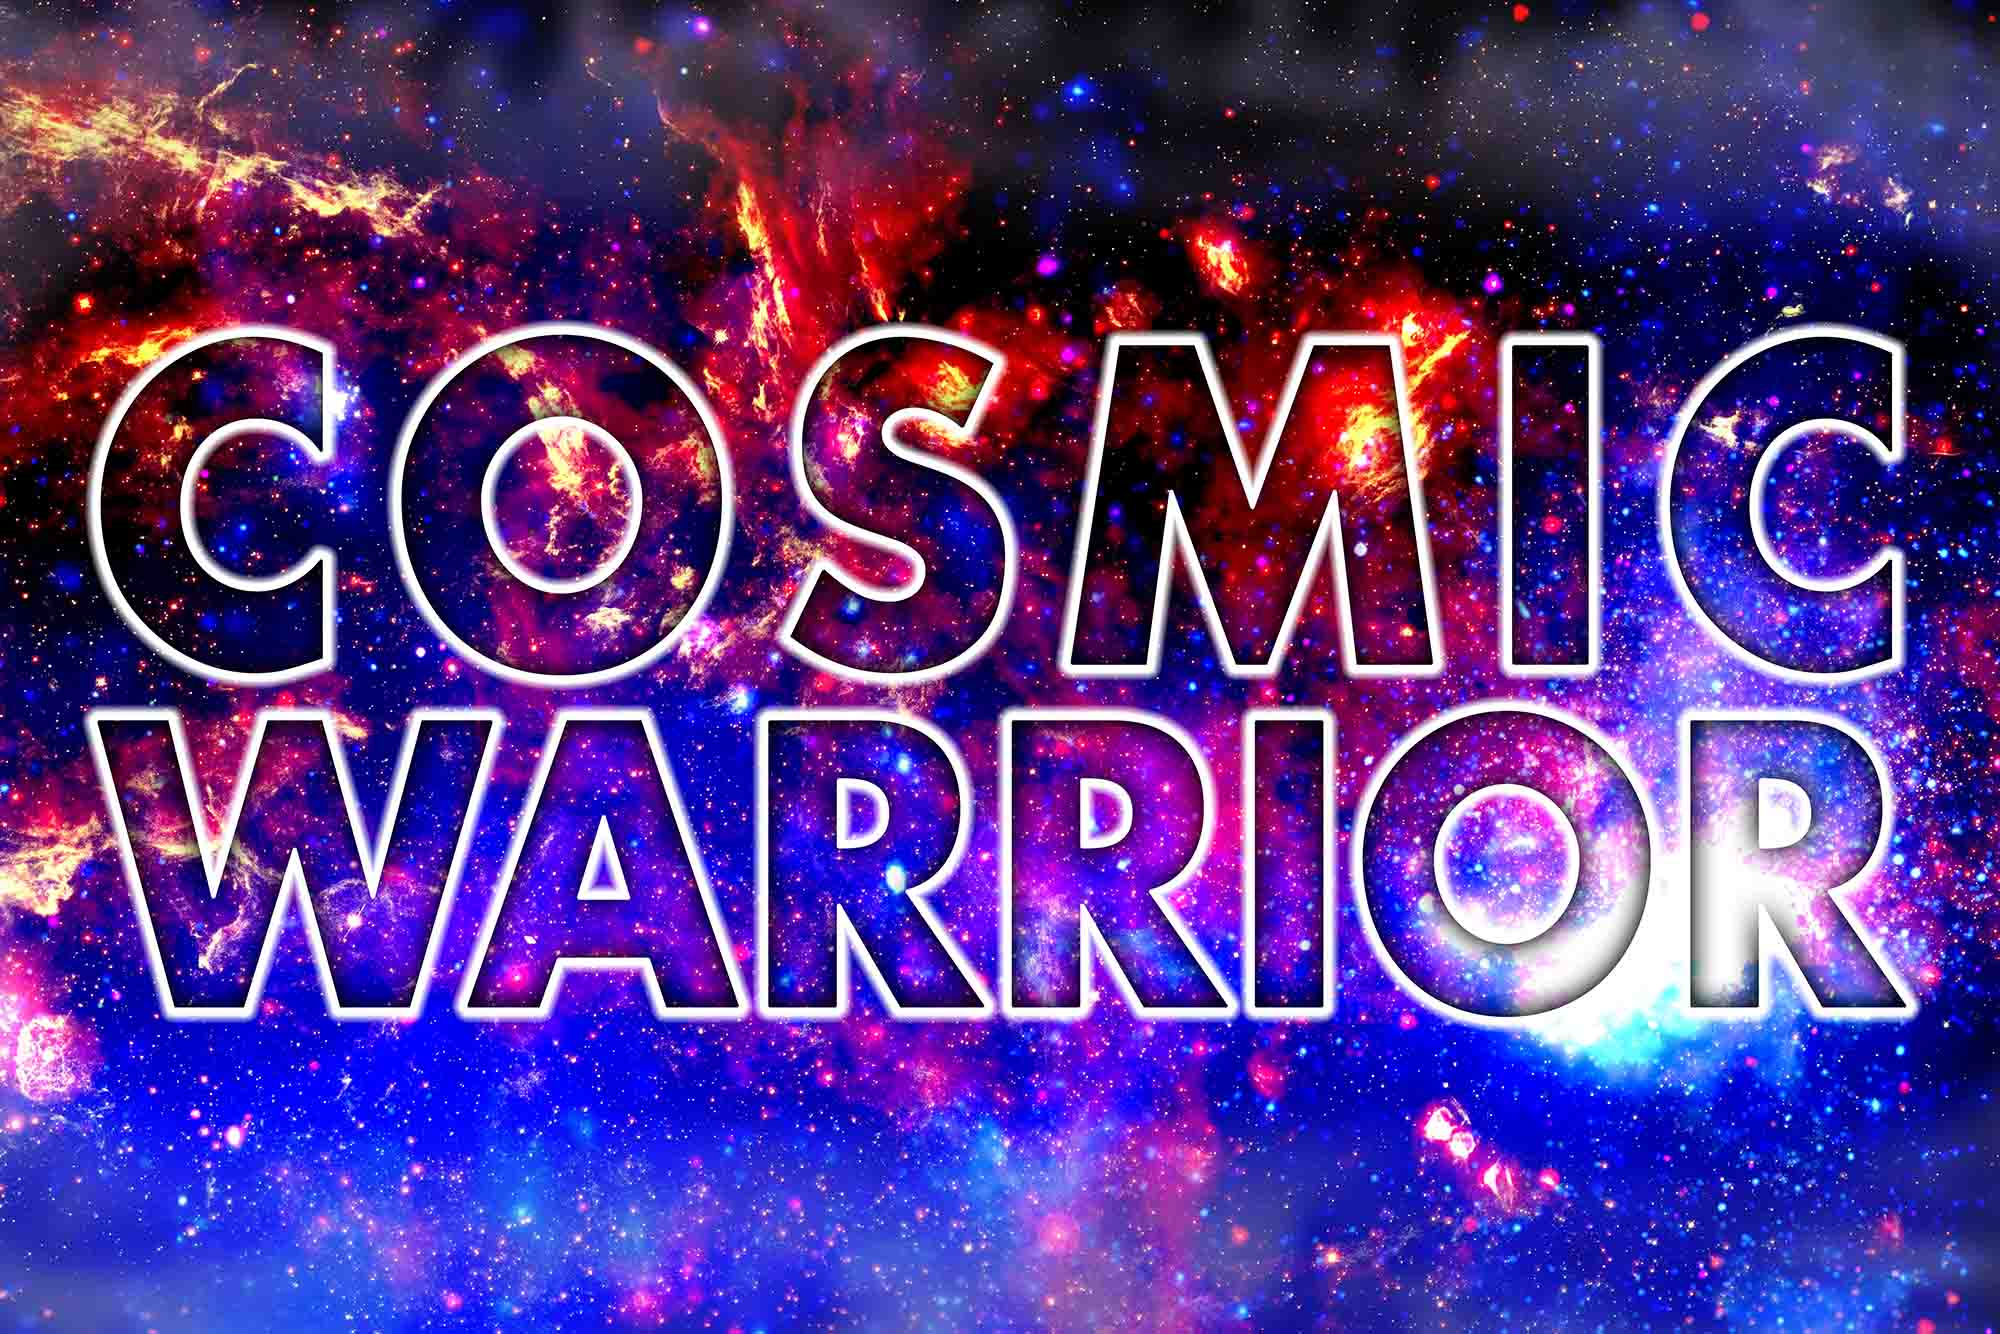 Cosmic Warrior Art Print